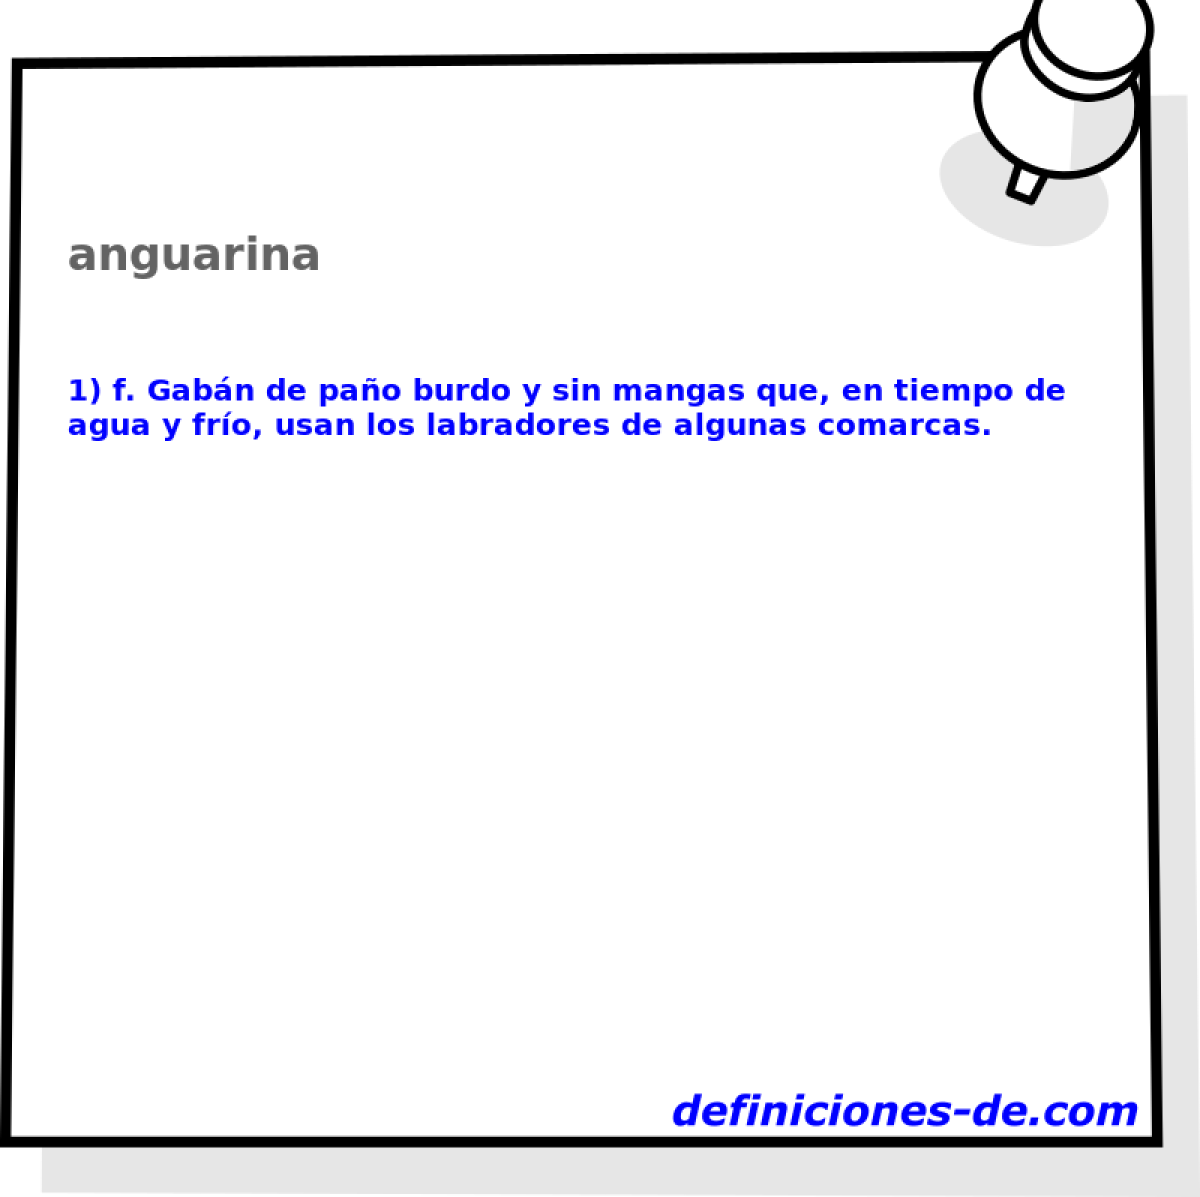 anguarina 